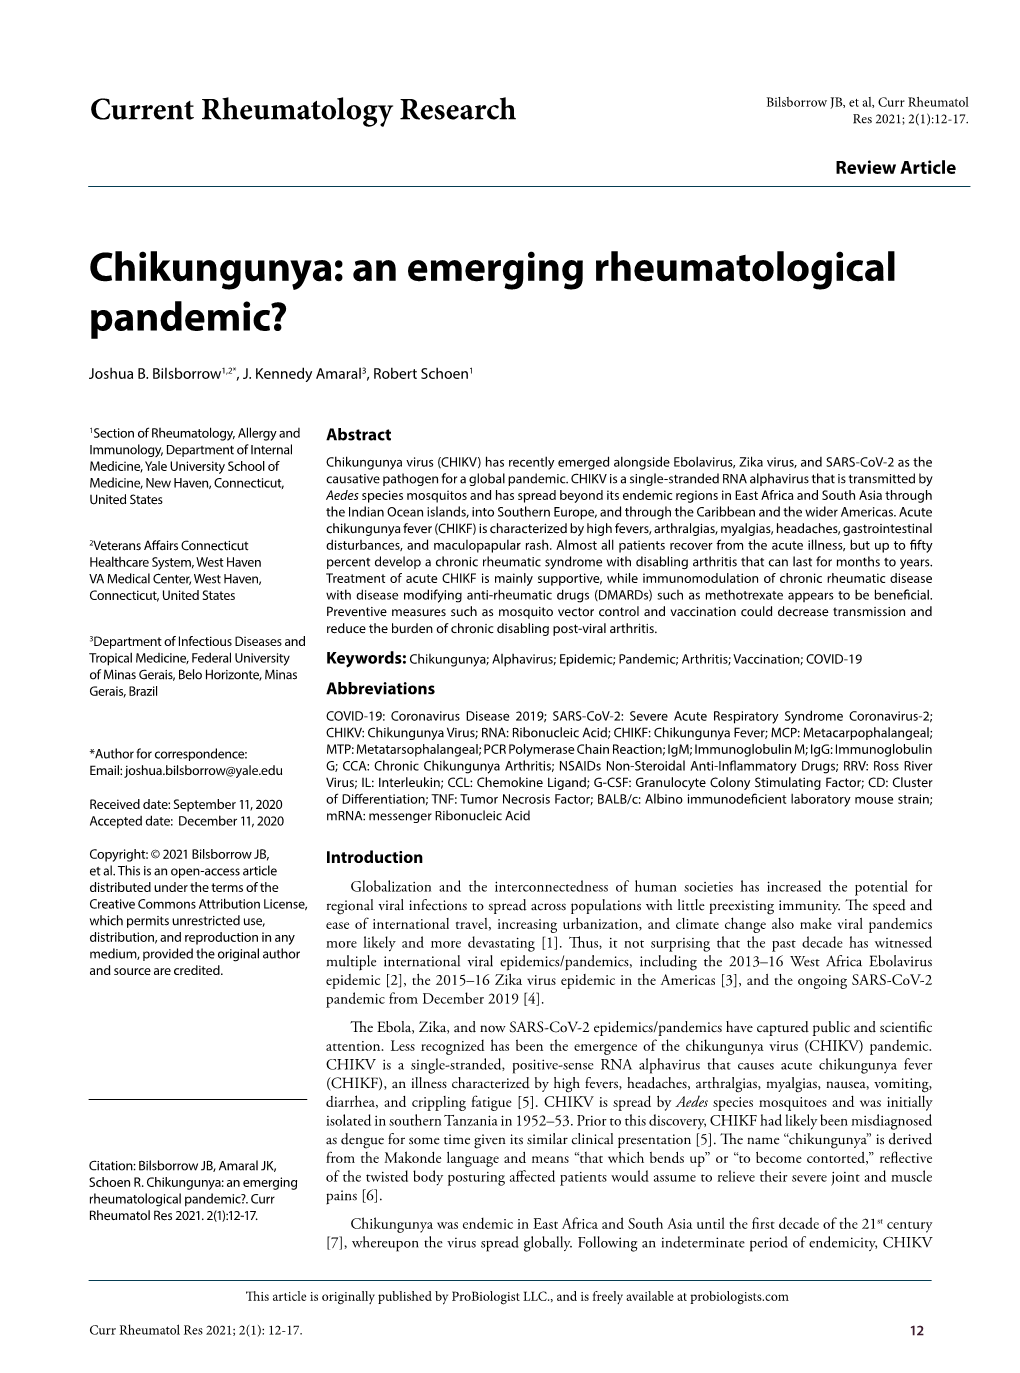 Chikungunya: an Emerging Rheumatological Pandemic?